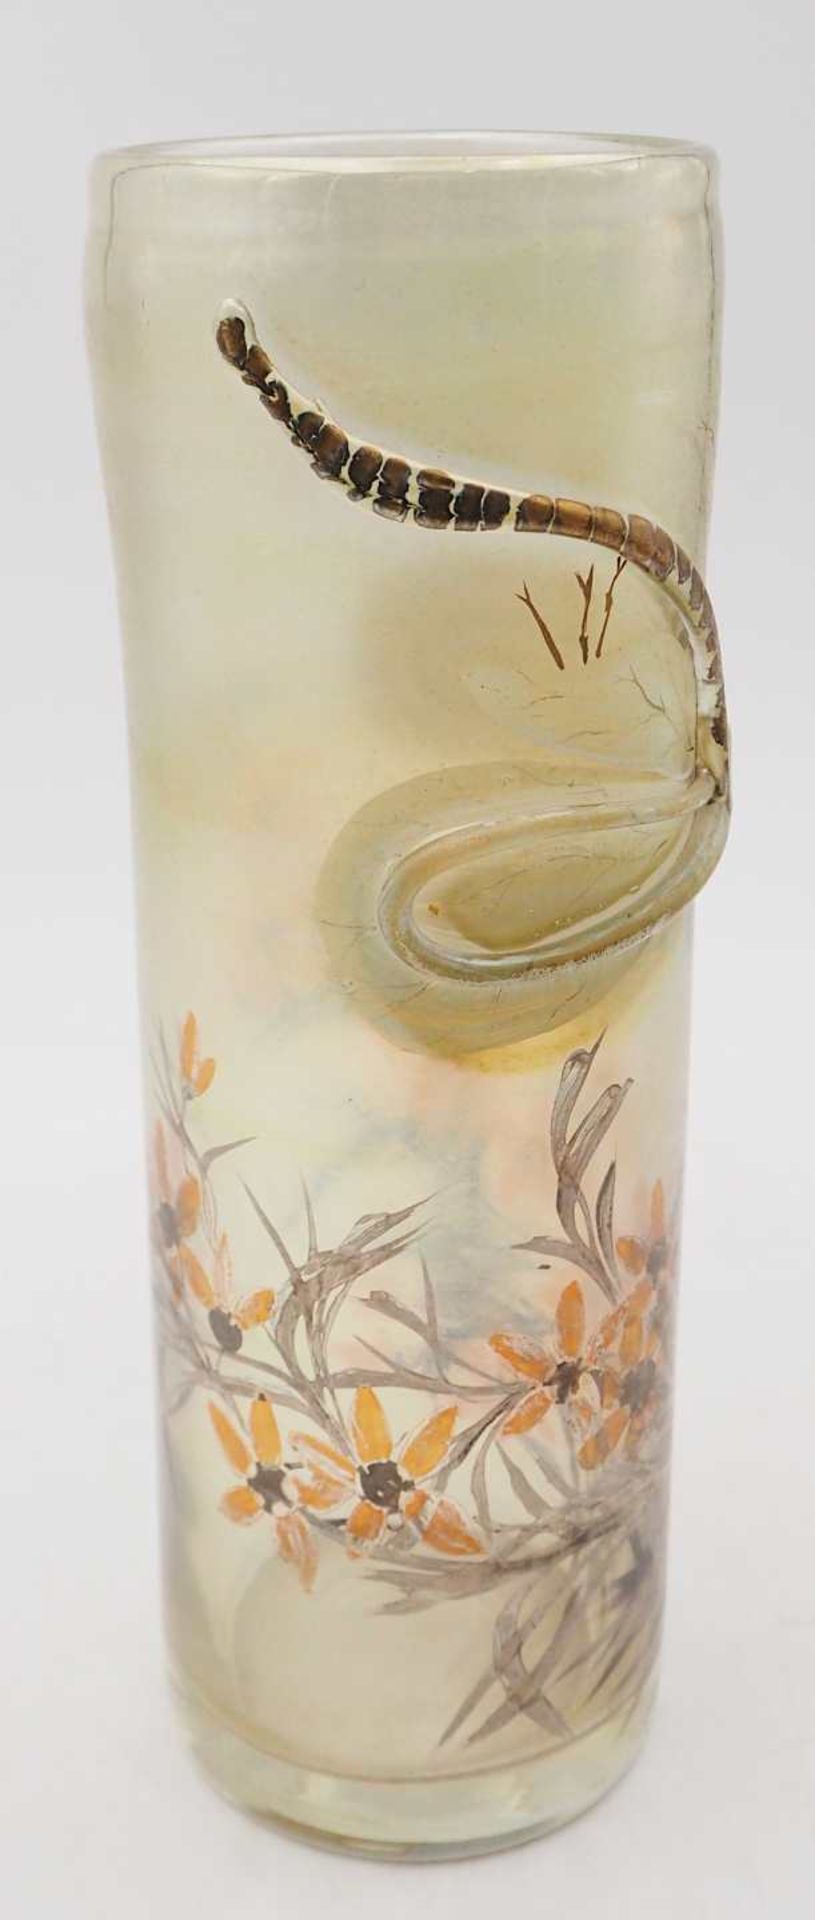 1 Vase signiert Erwin EISCH, Bayerischer Wald Zylinderform, farbloses Glas leicht iris - Bild 3 aus 7